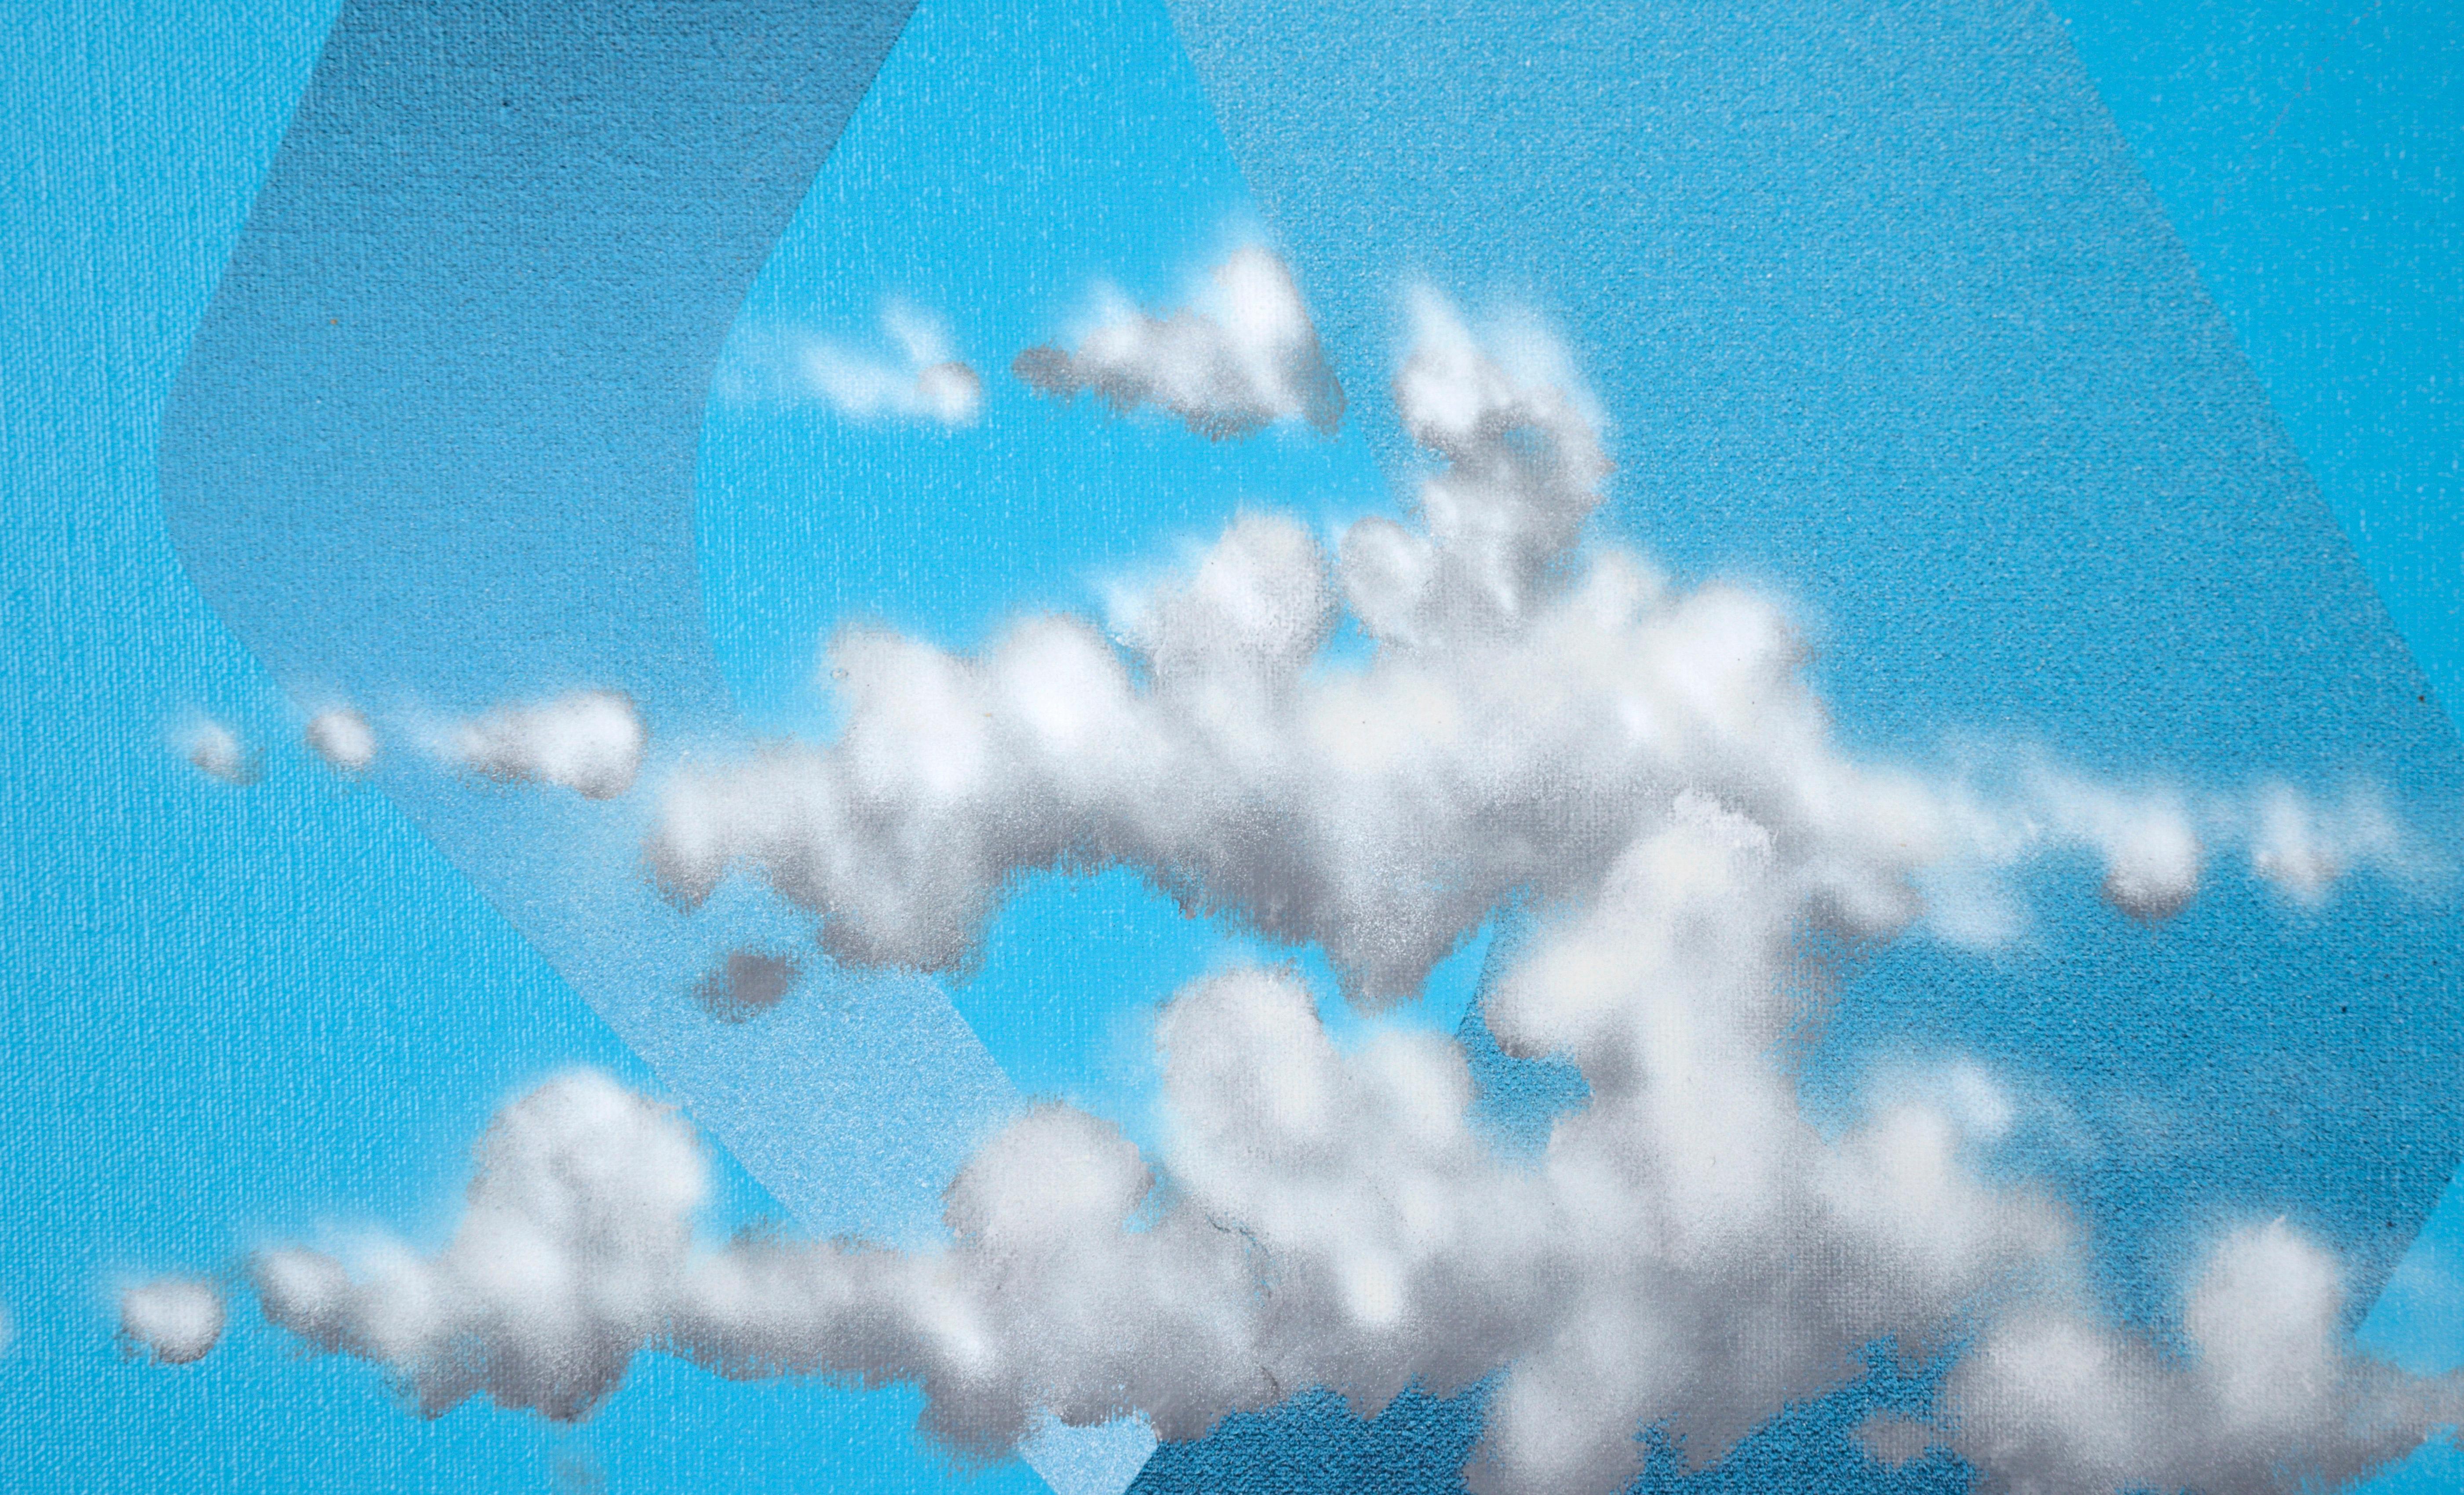 Floating in a Surrealist Space – Abstrakte Komposition in Acryl auf Leinwand

Surrealistische Komposition des aus Kalifornien und Washington stammenden Künstlers David Sherburne (Amerikaner, geb. 1943). Eine flache, bandartige Form dreht sich in